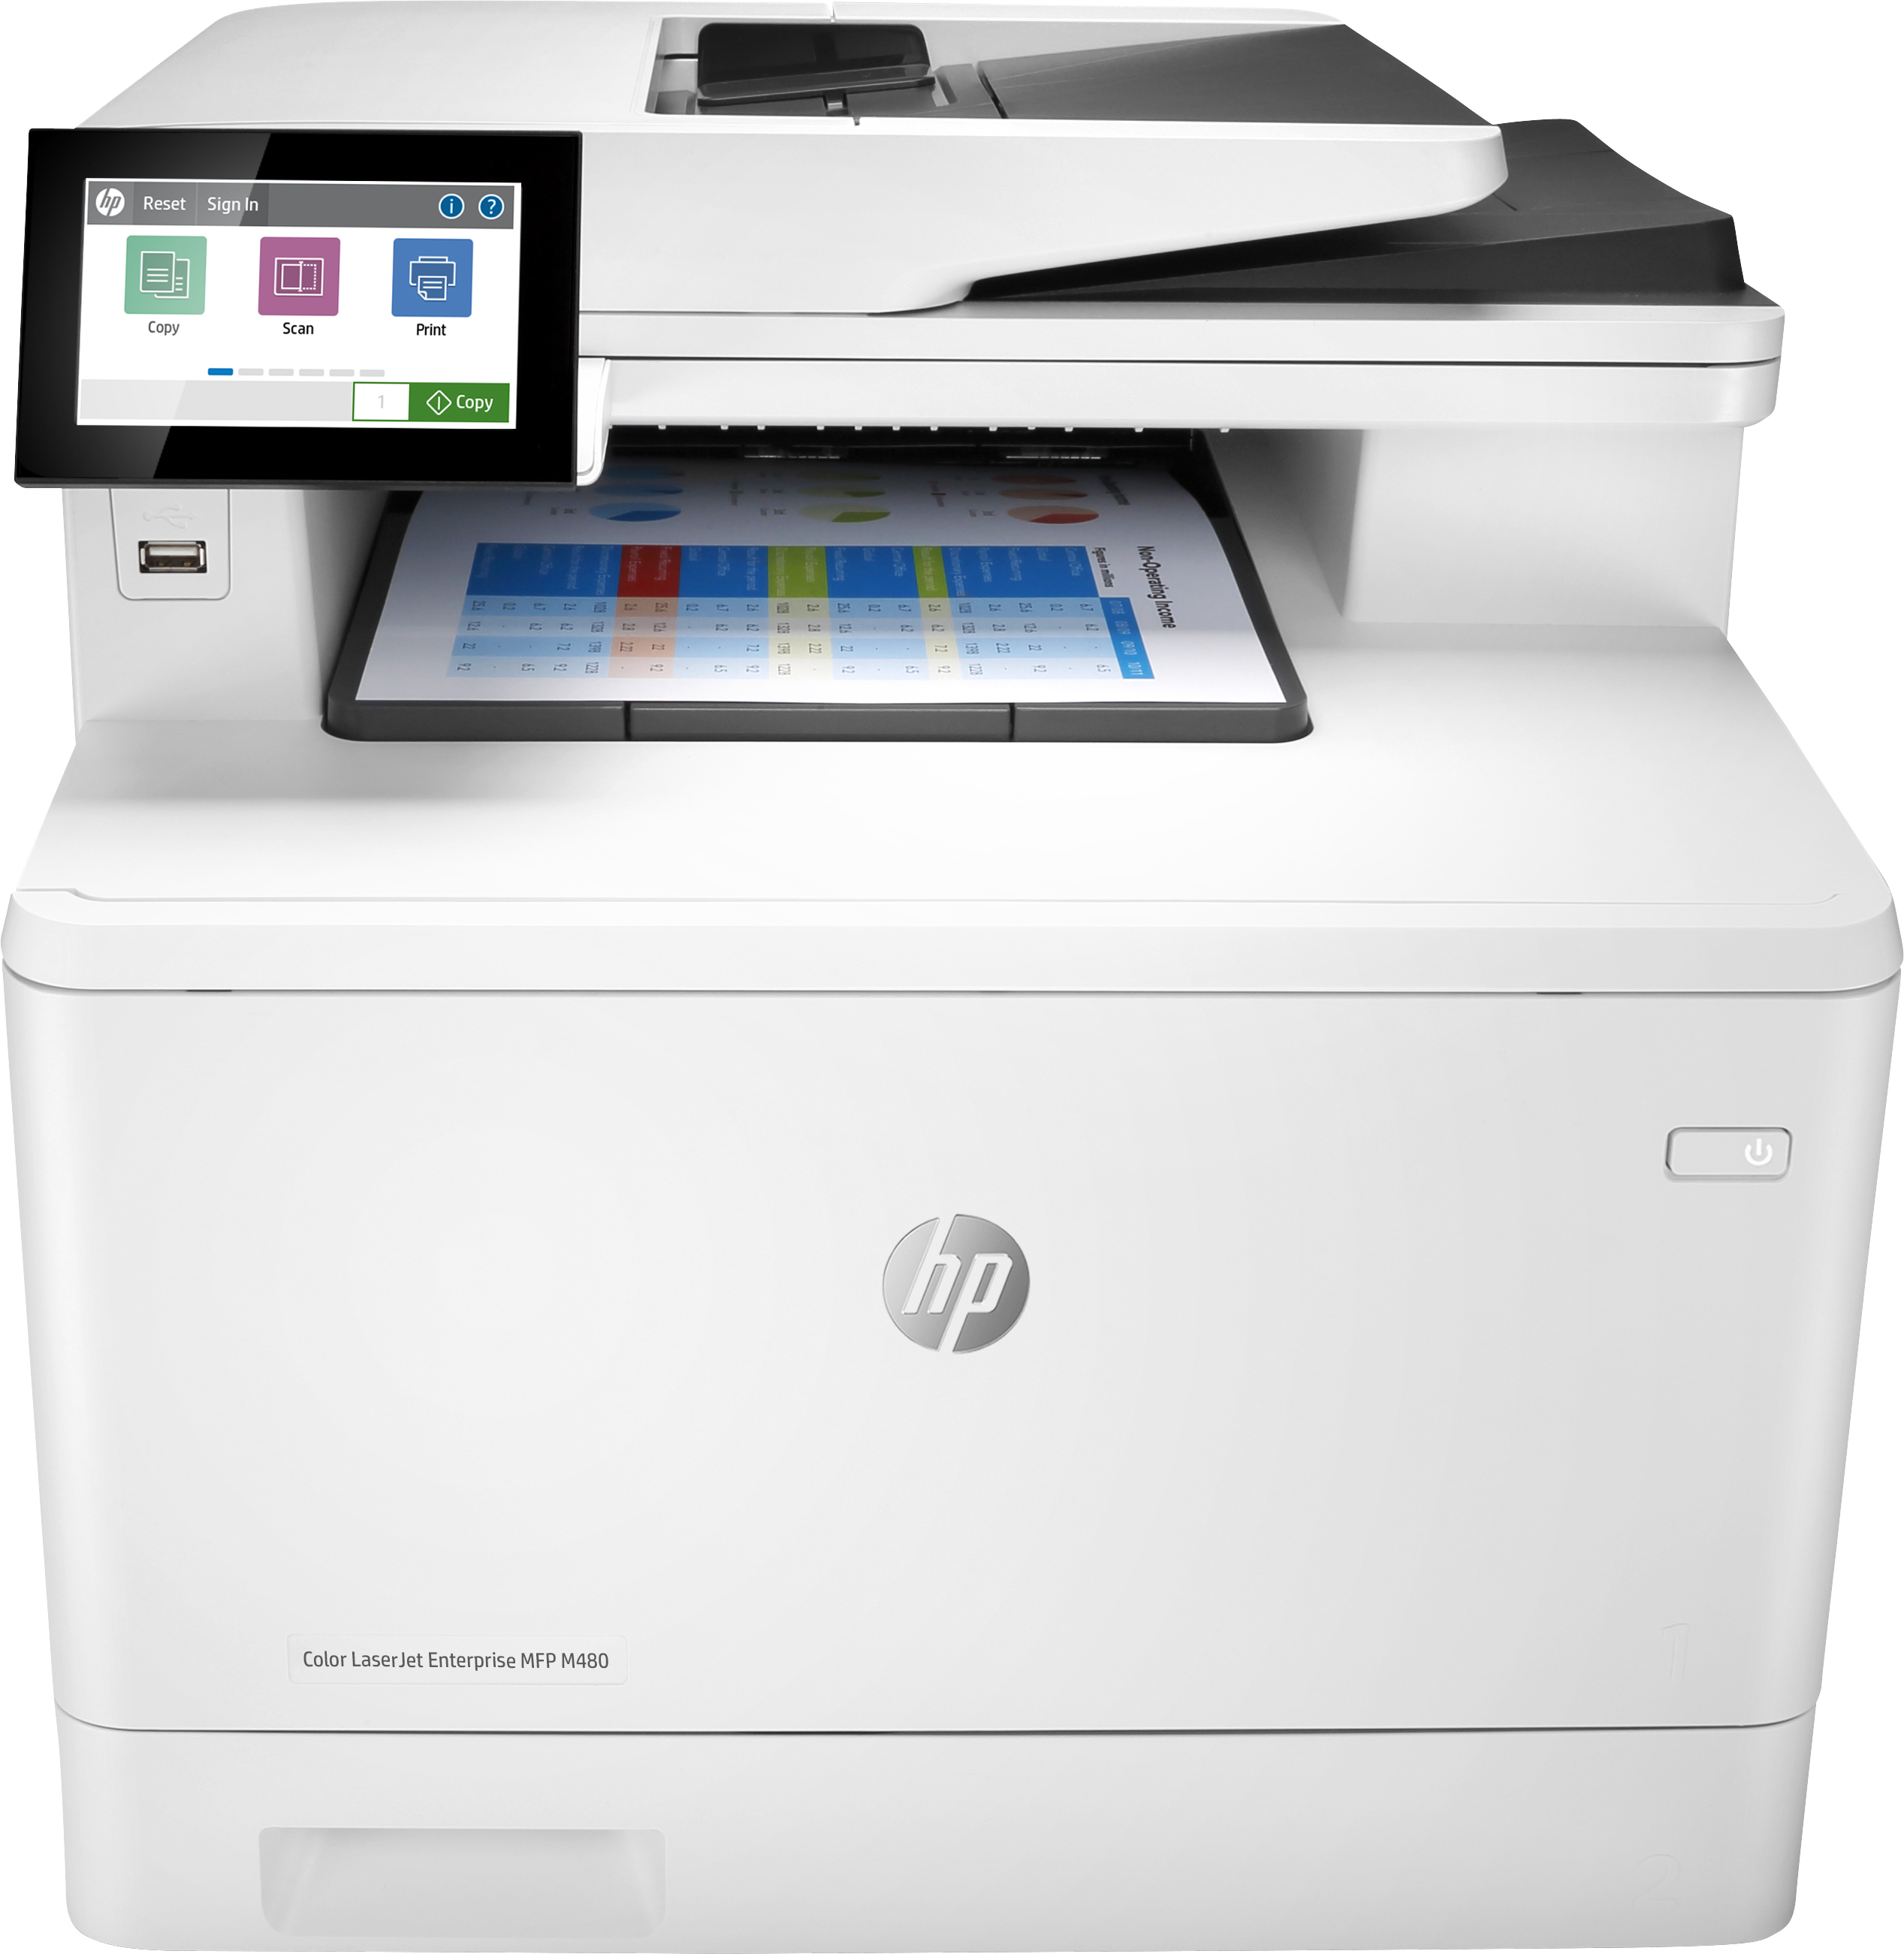 Image of HP Color LaserJet Enterprise Stampante multifunzione Enterprise Color LaserJet M480f, Colore, Stampante per Aziendale, Stampa, copia, scansione, fax, Compatta; Avanzate funzionalità di sicurezza; Stampa fronte/retro; ADF da 50 fogli; Efficienza energetica